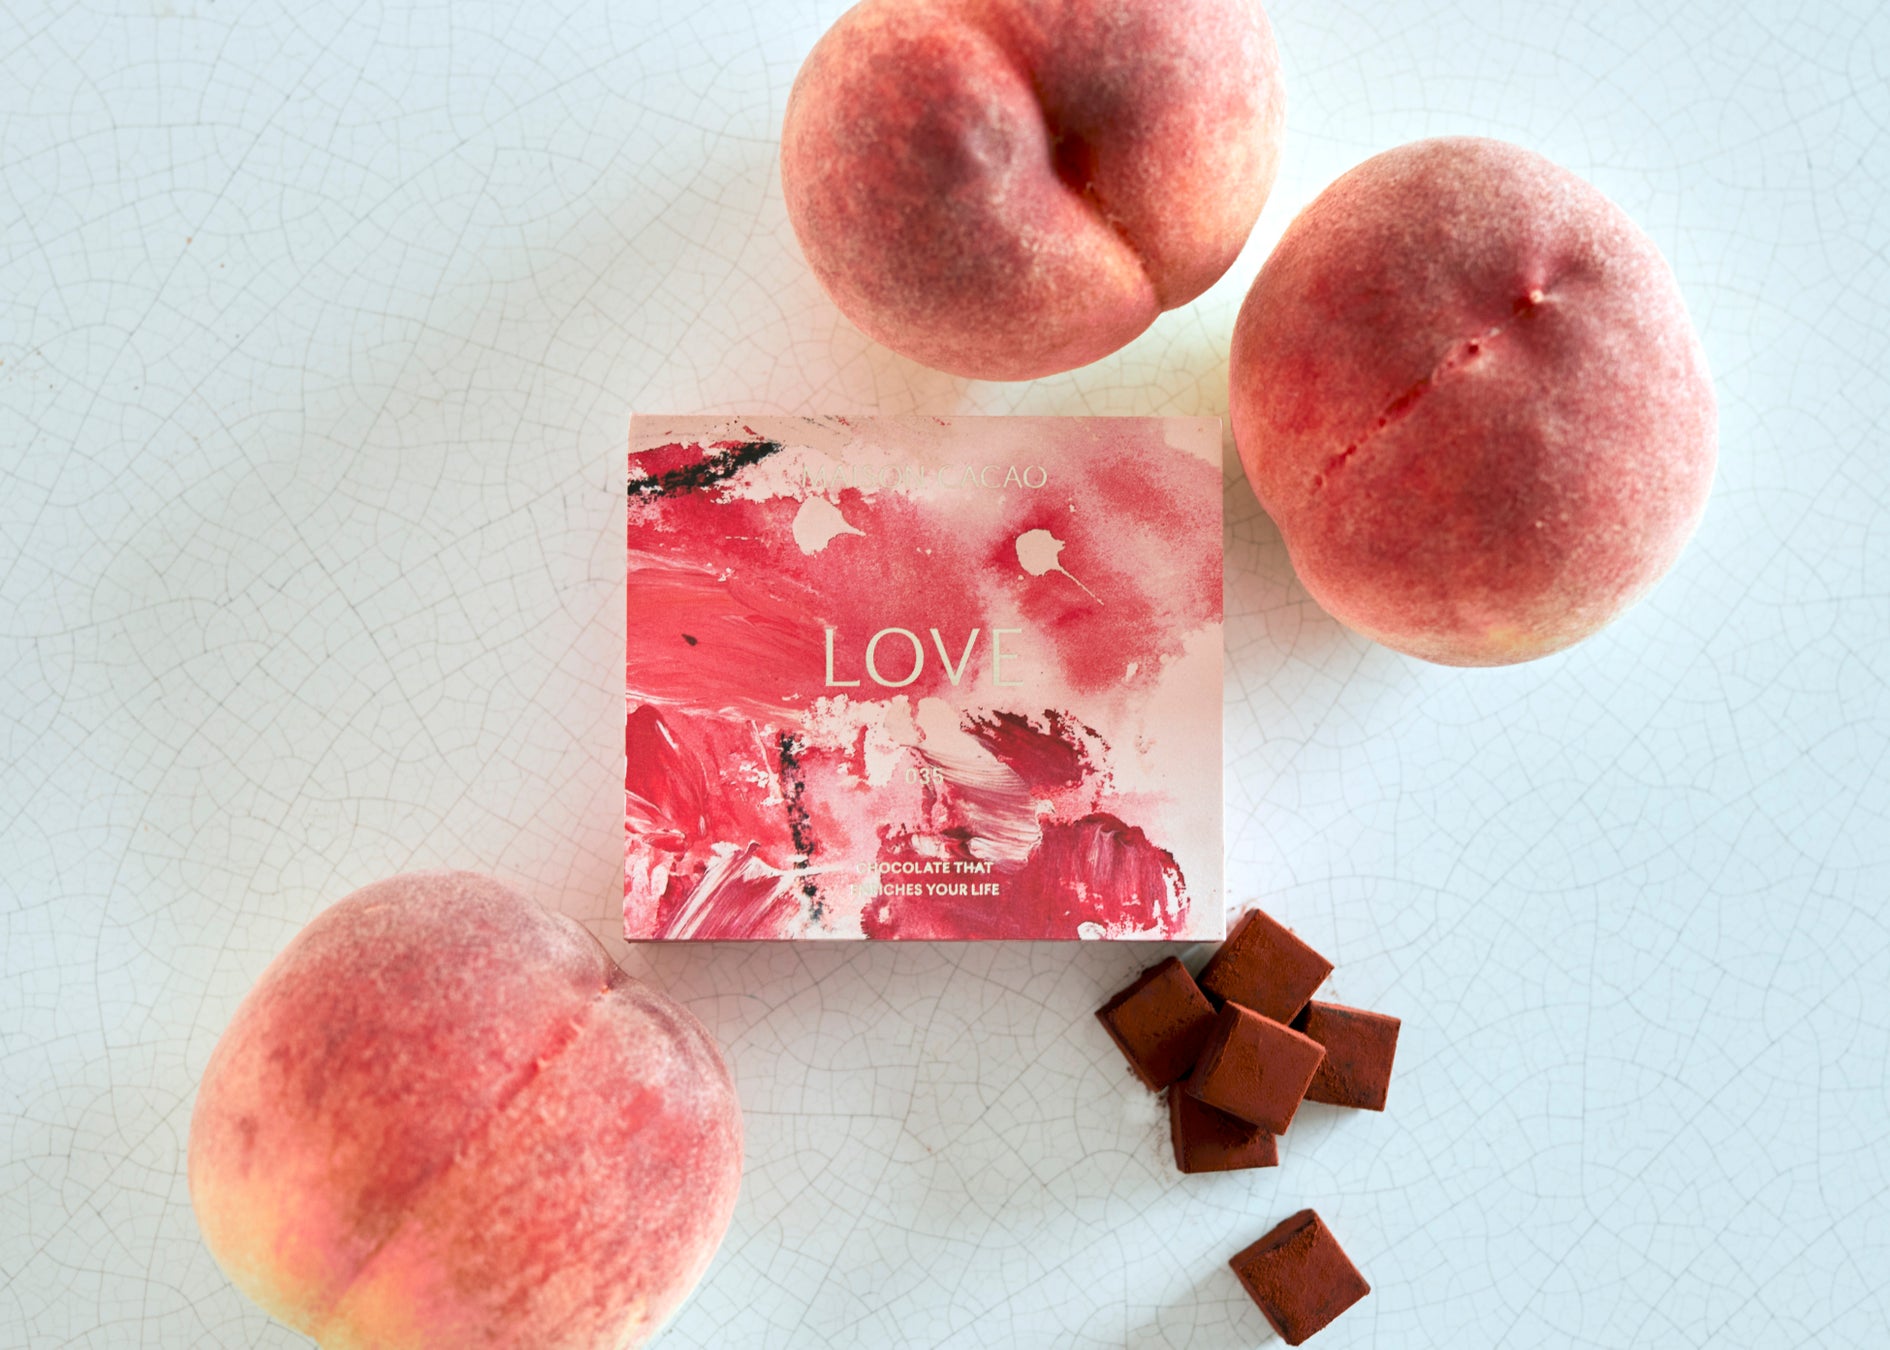 夏チョコに「旅するメゾン」を。旬の味わいを凝縮した、山梨県の瑞々しい白桃を使用したチョコレートスイーツが登場。